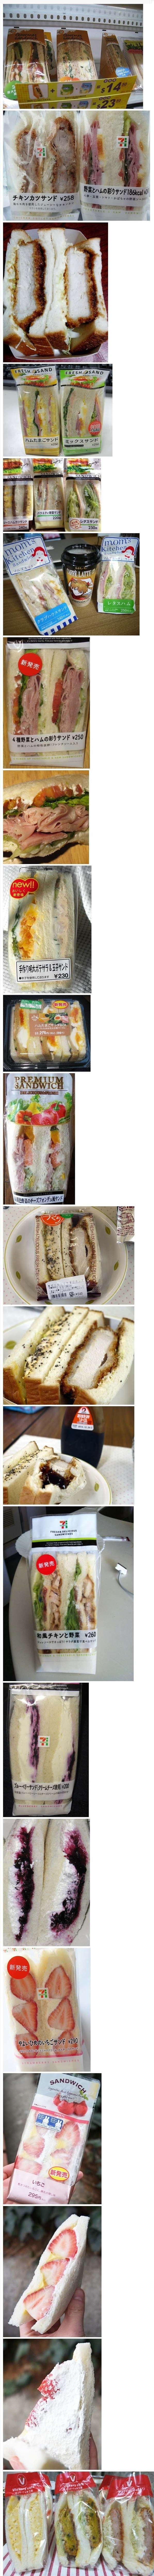 일본 편의점 샌드위치